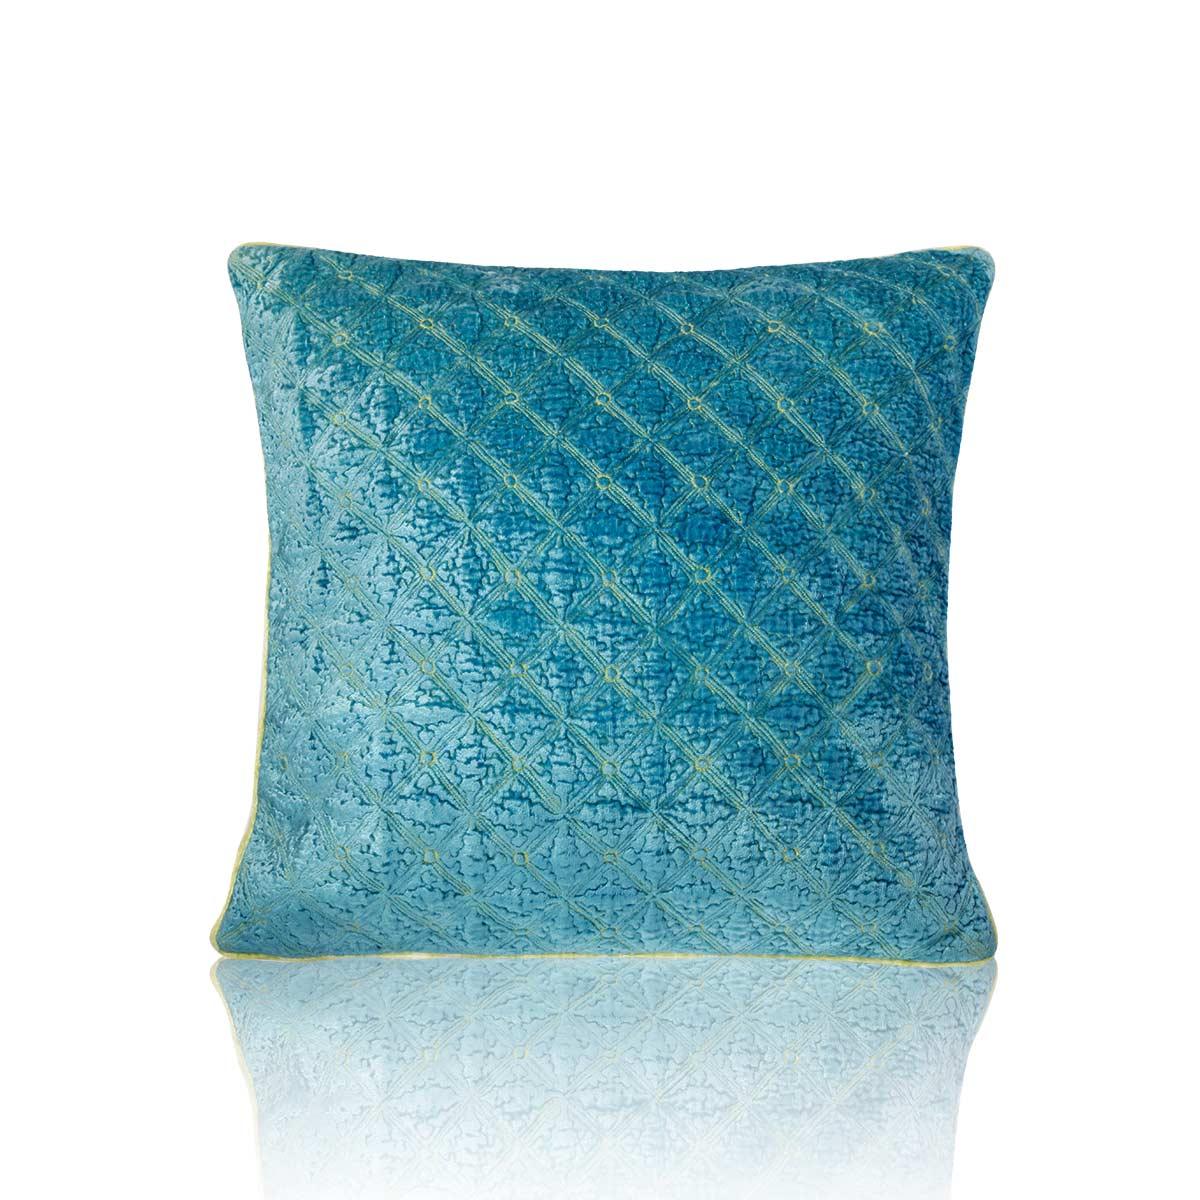 Hana 20 In X 20 In Blue Cushion Cover - Home4u